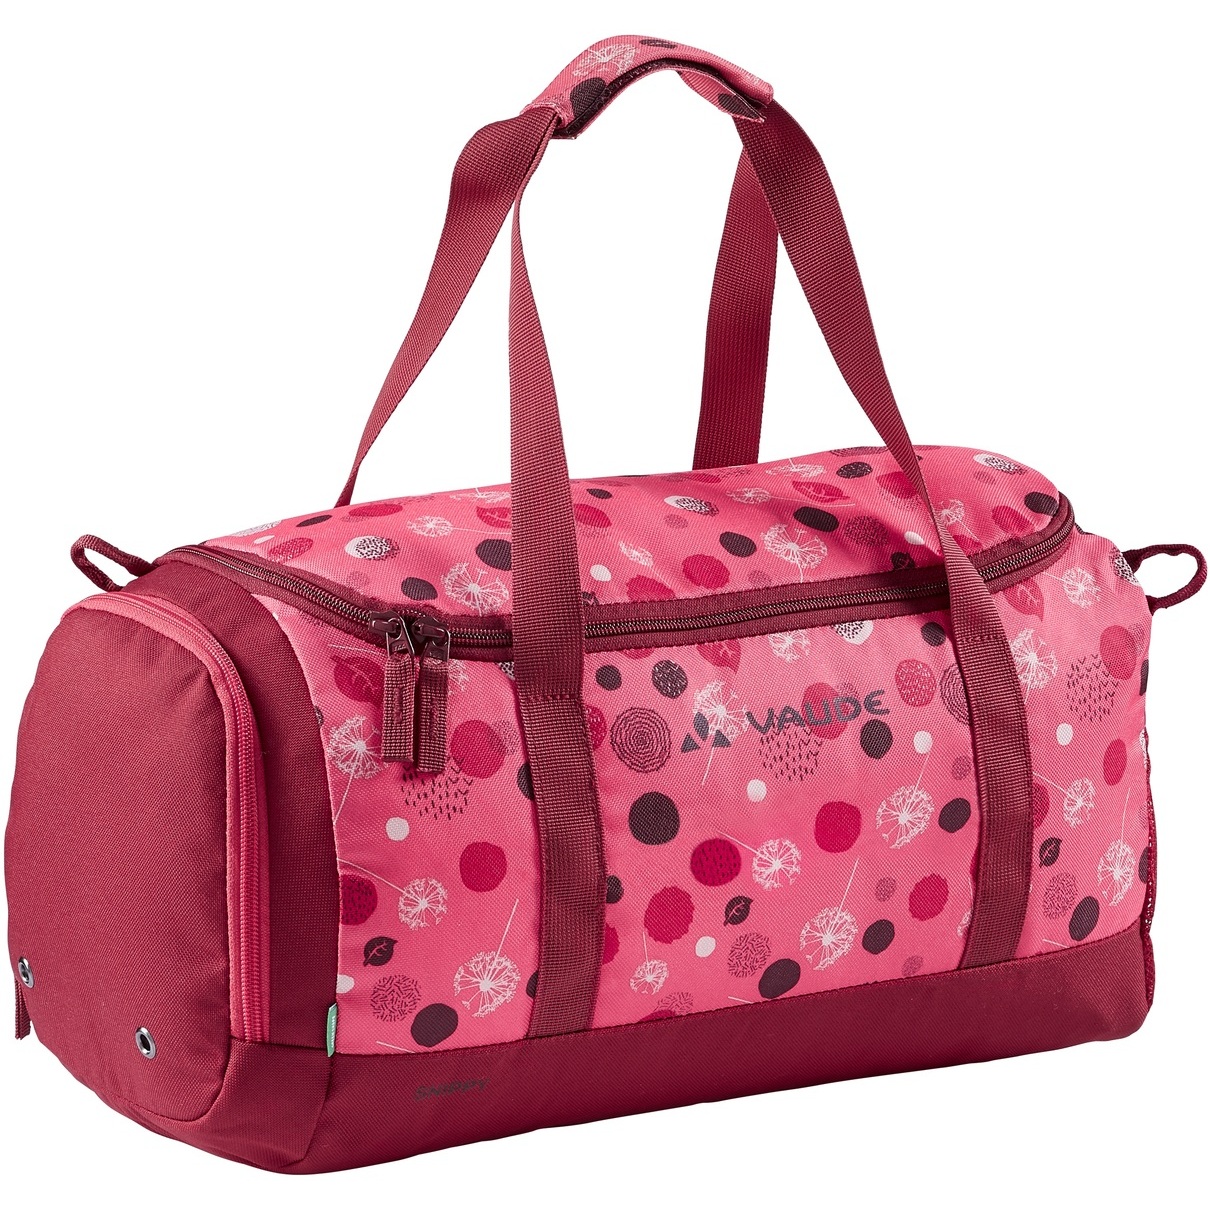 Produktbild von Vaude Snippy Sporttasche für Kinder - 10L - bright pink/cranberry